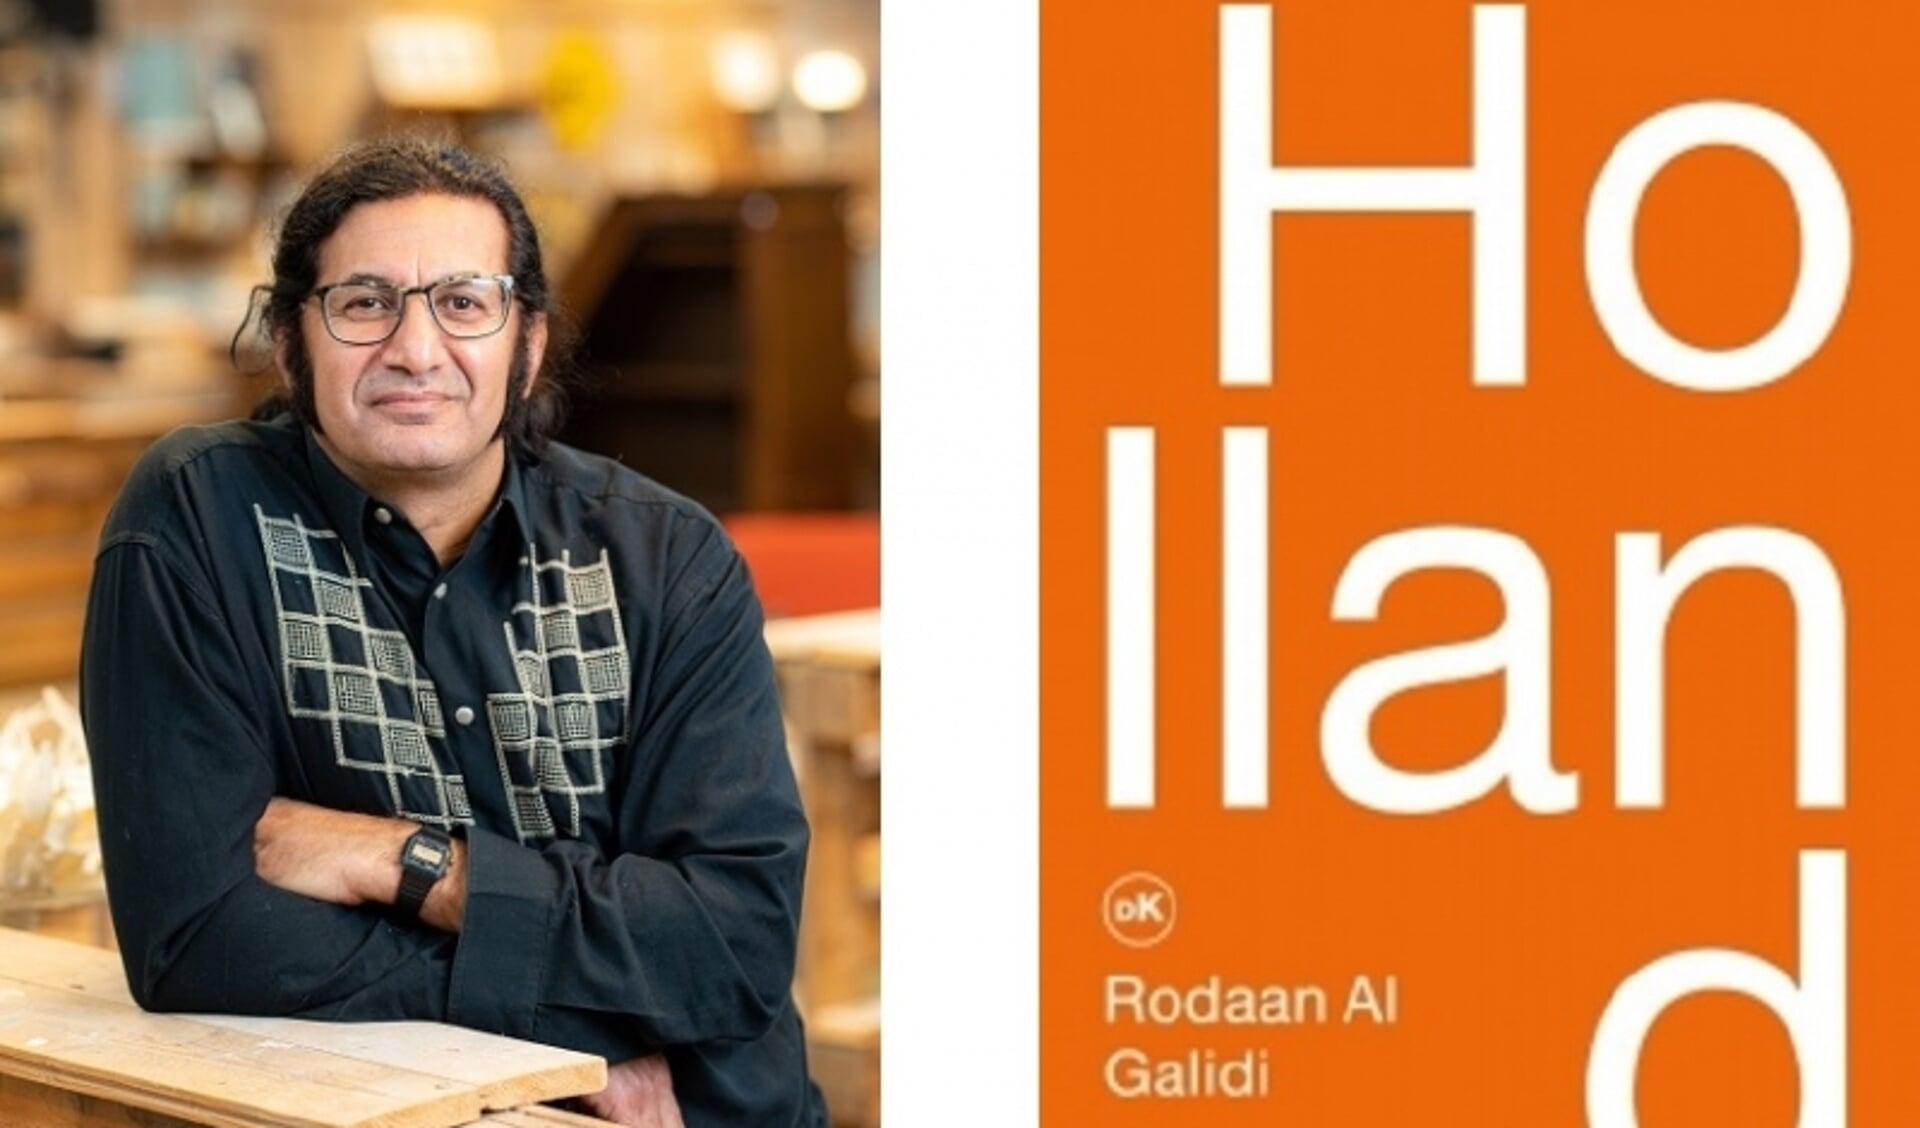 In het boek 'Holland' schreef Rodaan Al Galidi over het vinden van zijn weg in de Nederlandse samenleving.